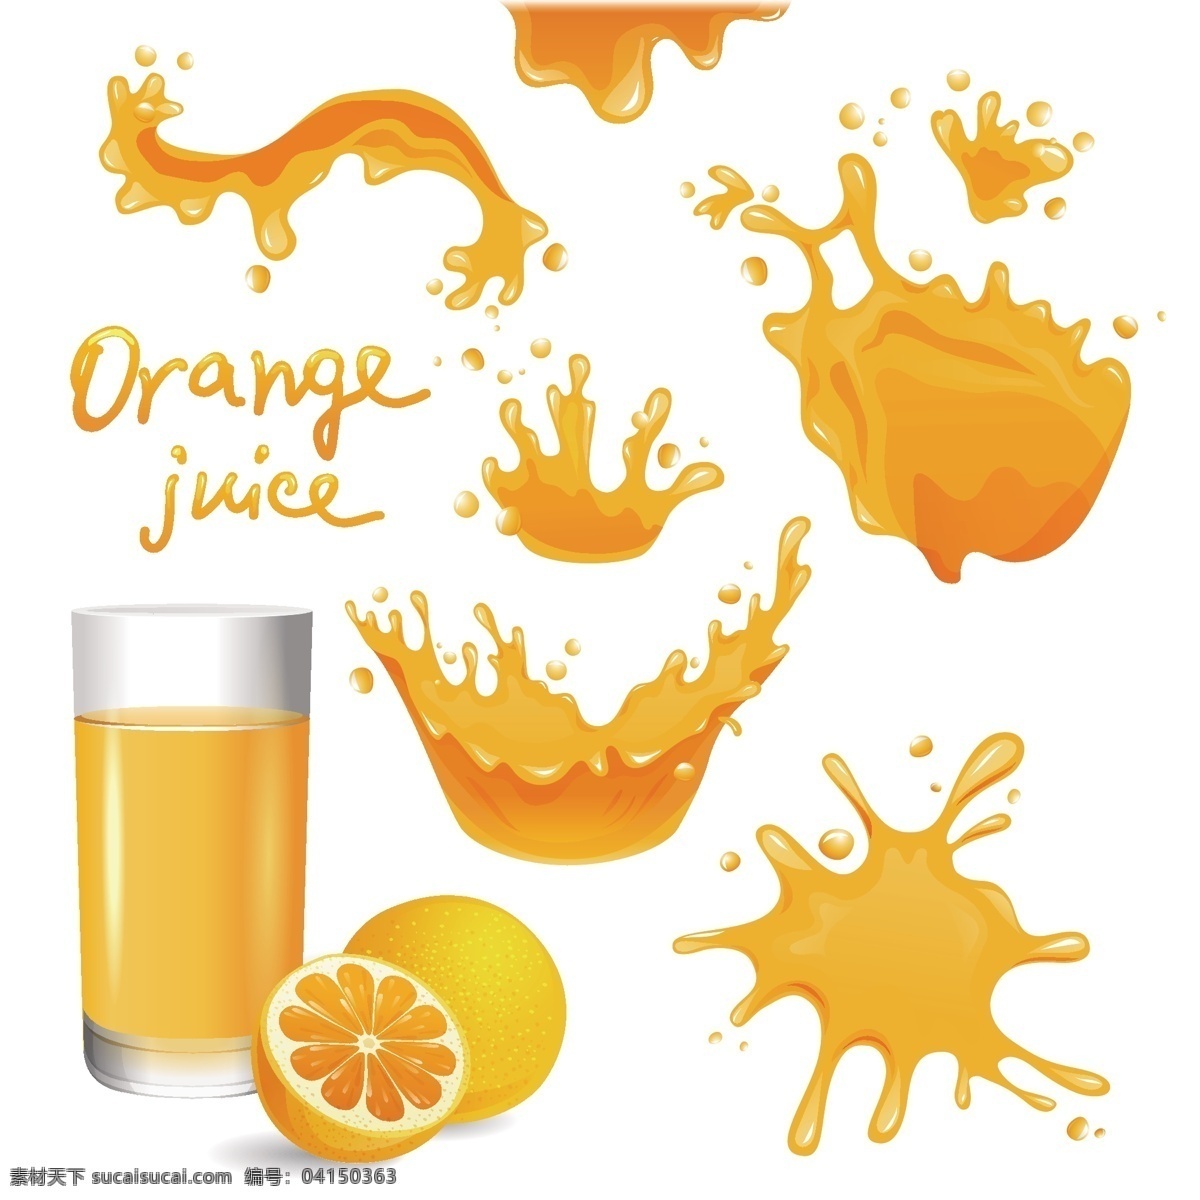 橙汁飞溅 橙汁 玻璃瓶 橘黄色 英文 切开的橙子 分层